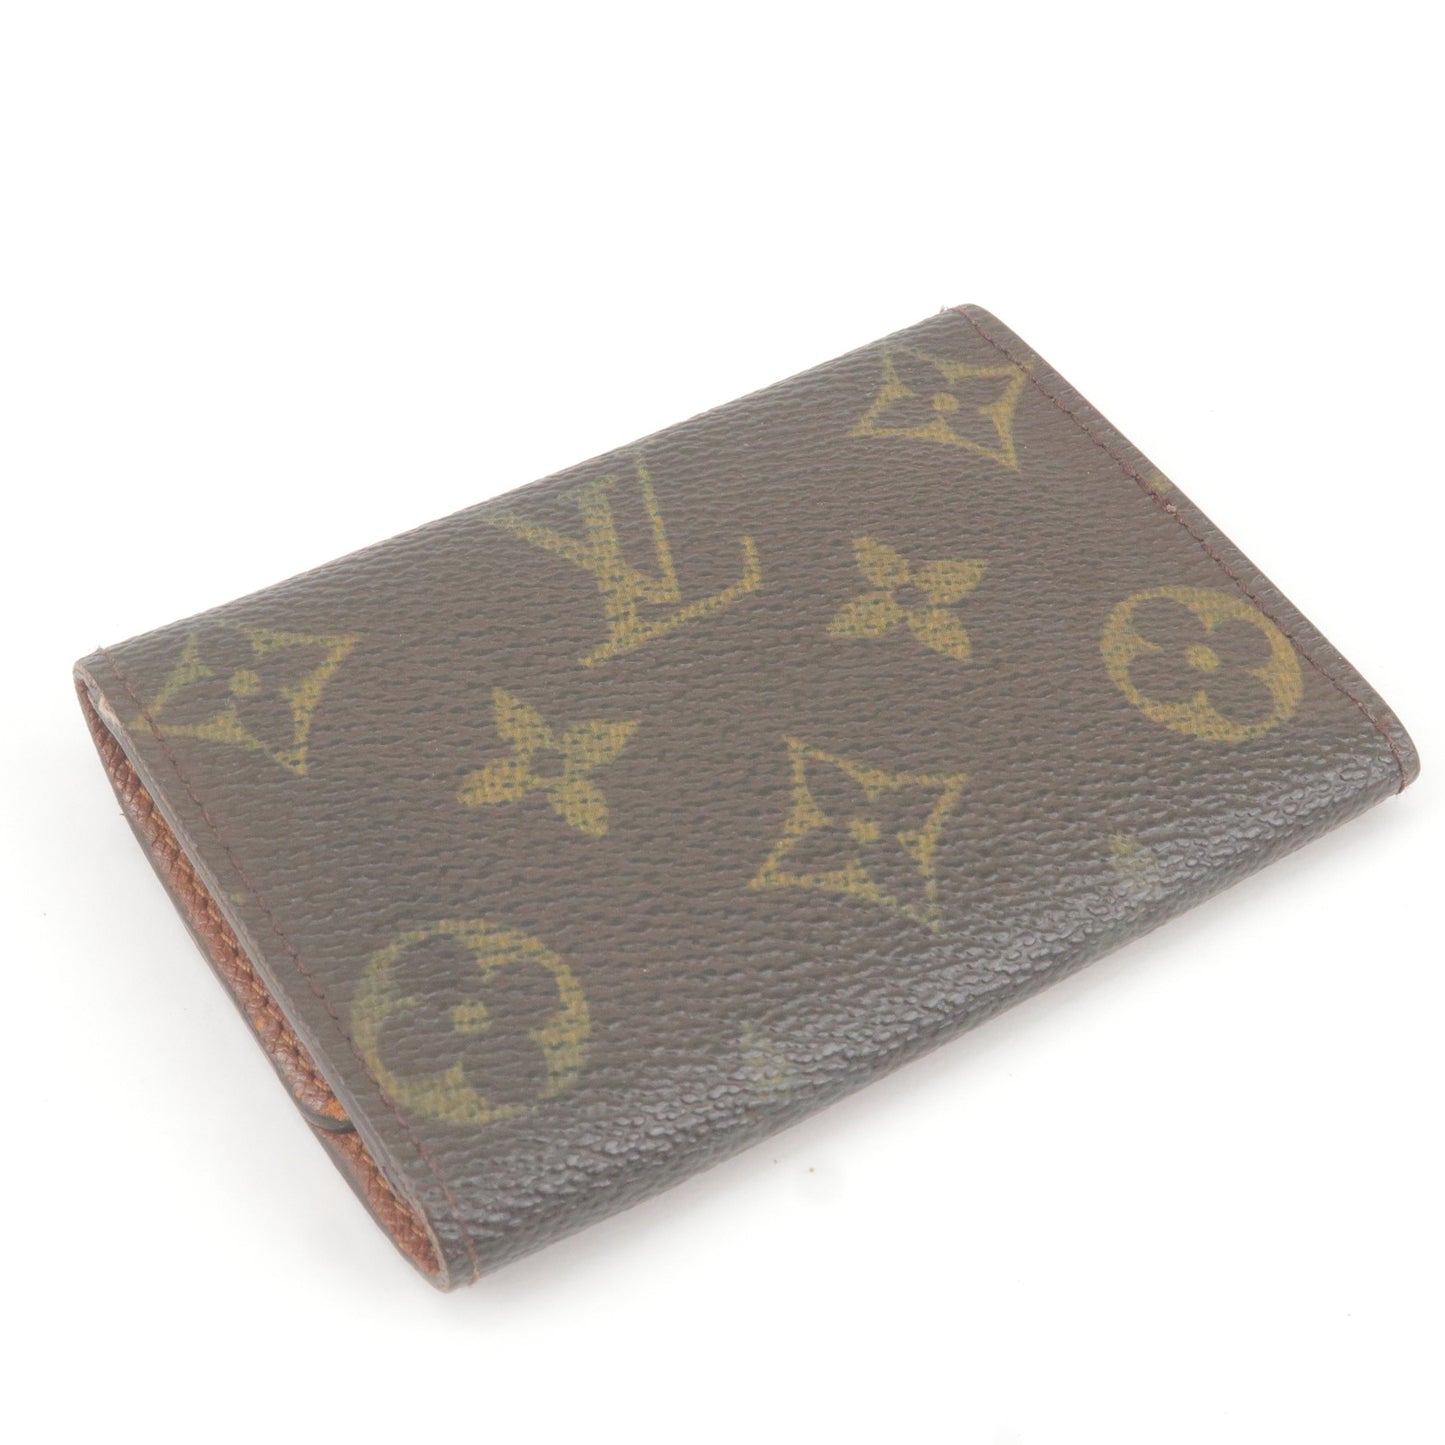 Louis Vuitton Set of 3 Key Case Coin Case M62630 M62650 N62631